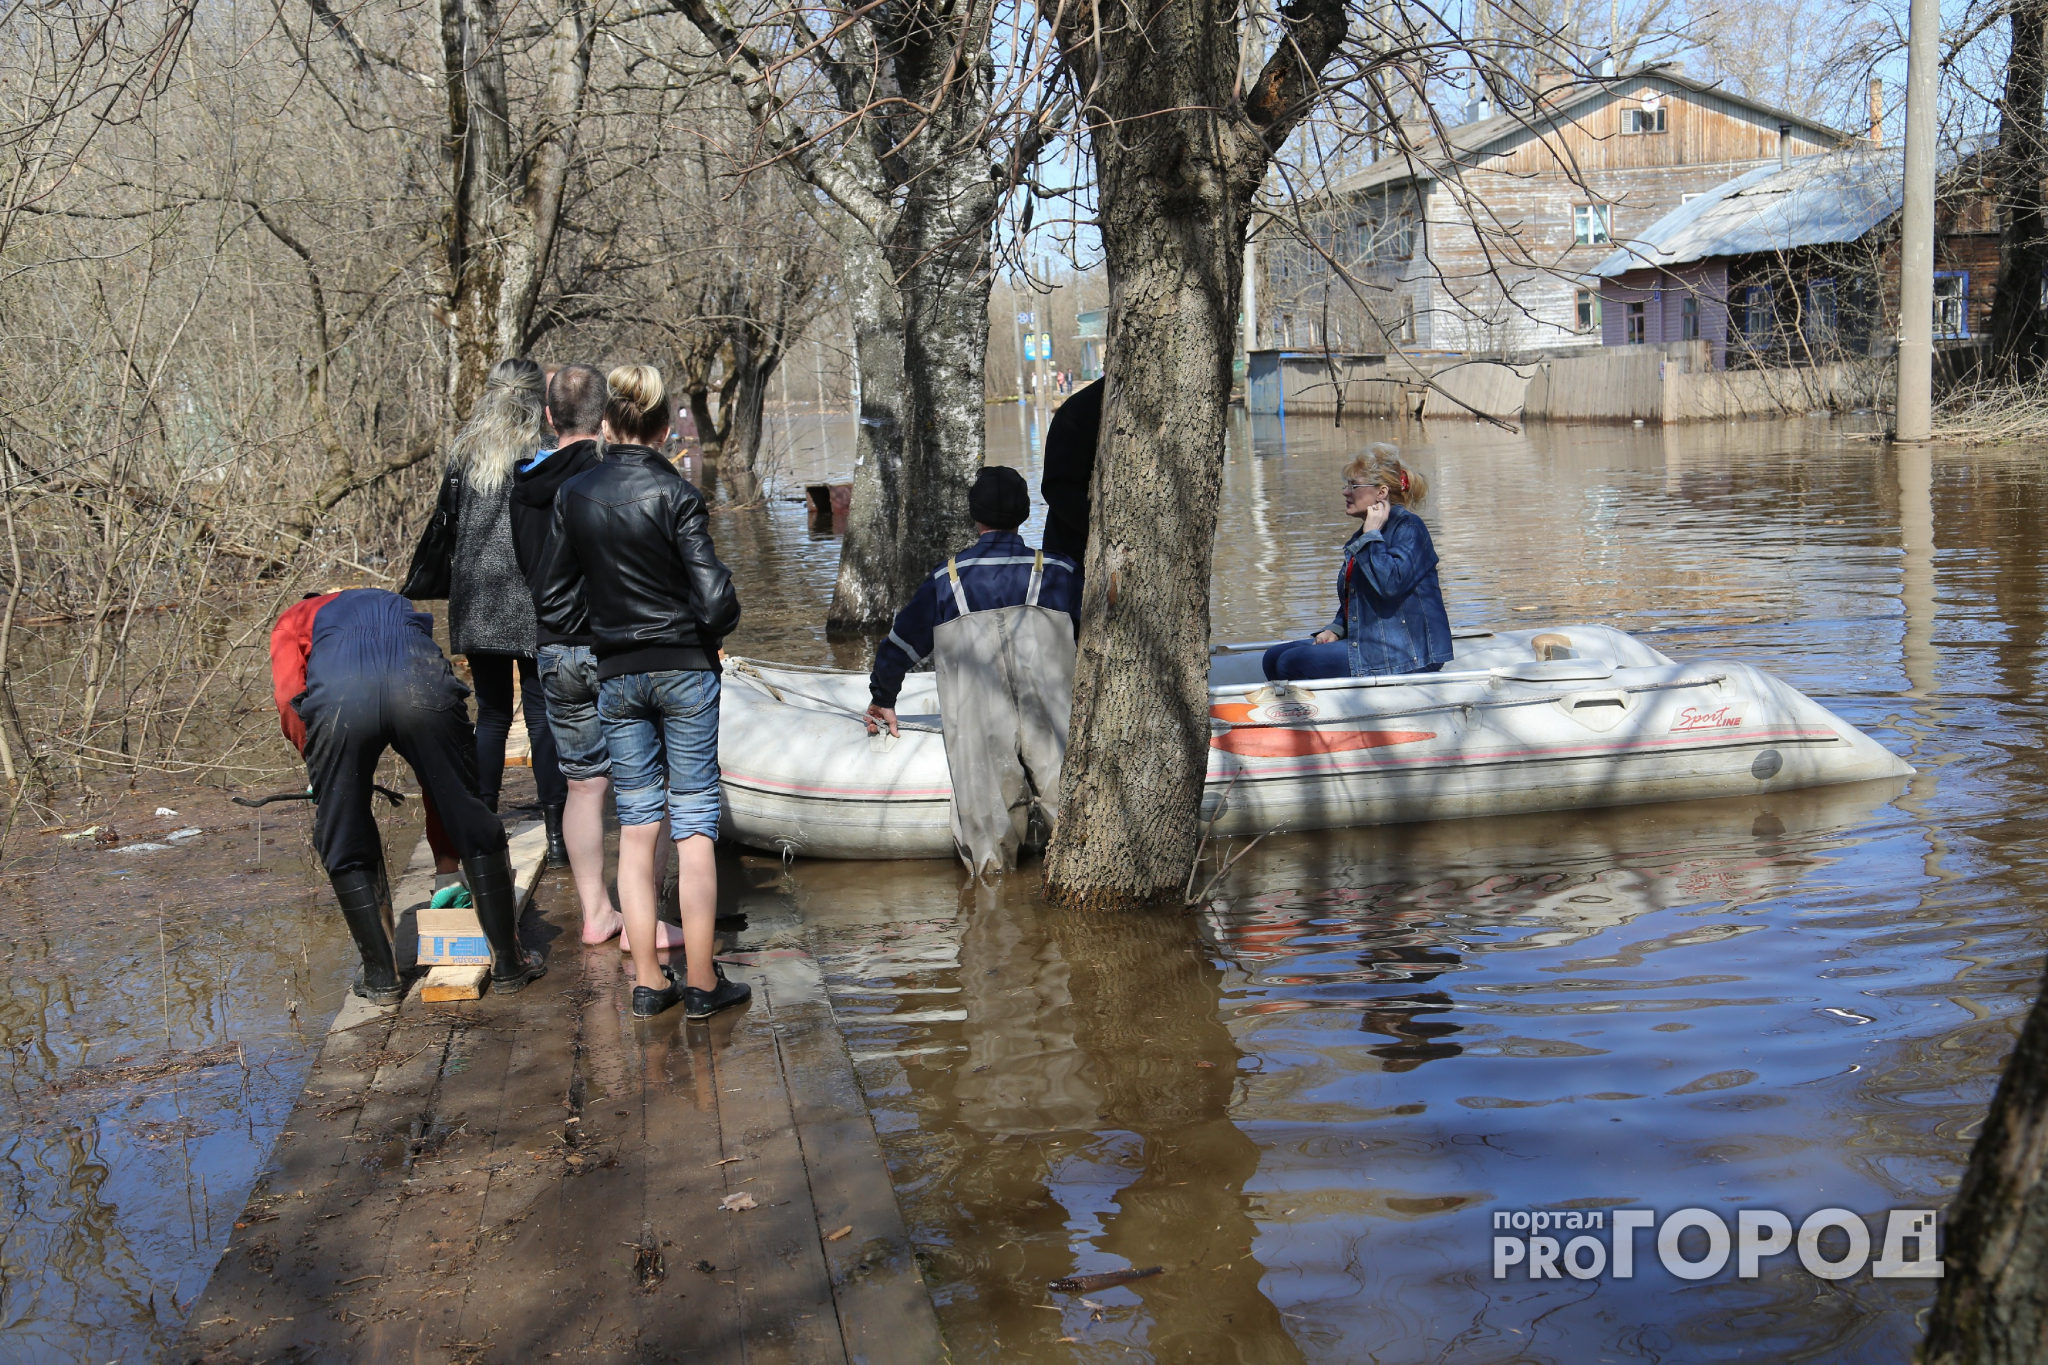 Паводок в Кирове: сколько денег тратят на ликвидацию последствий наводнения